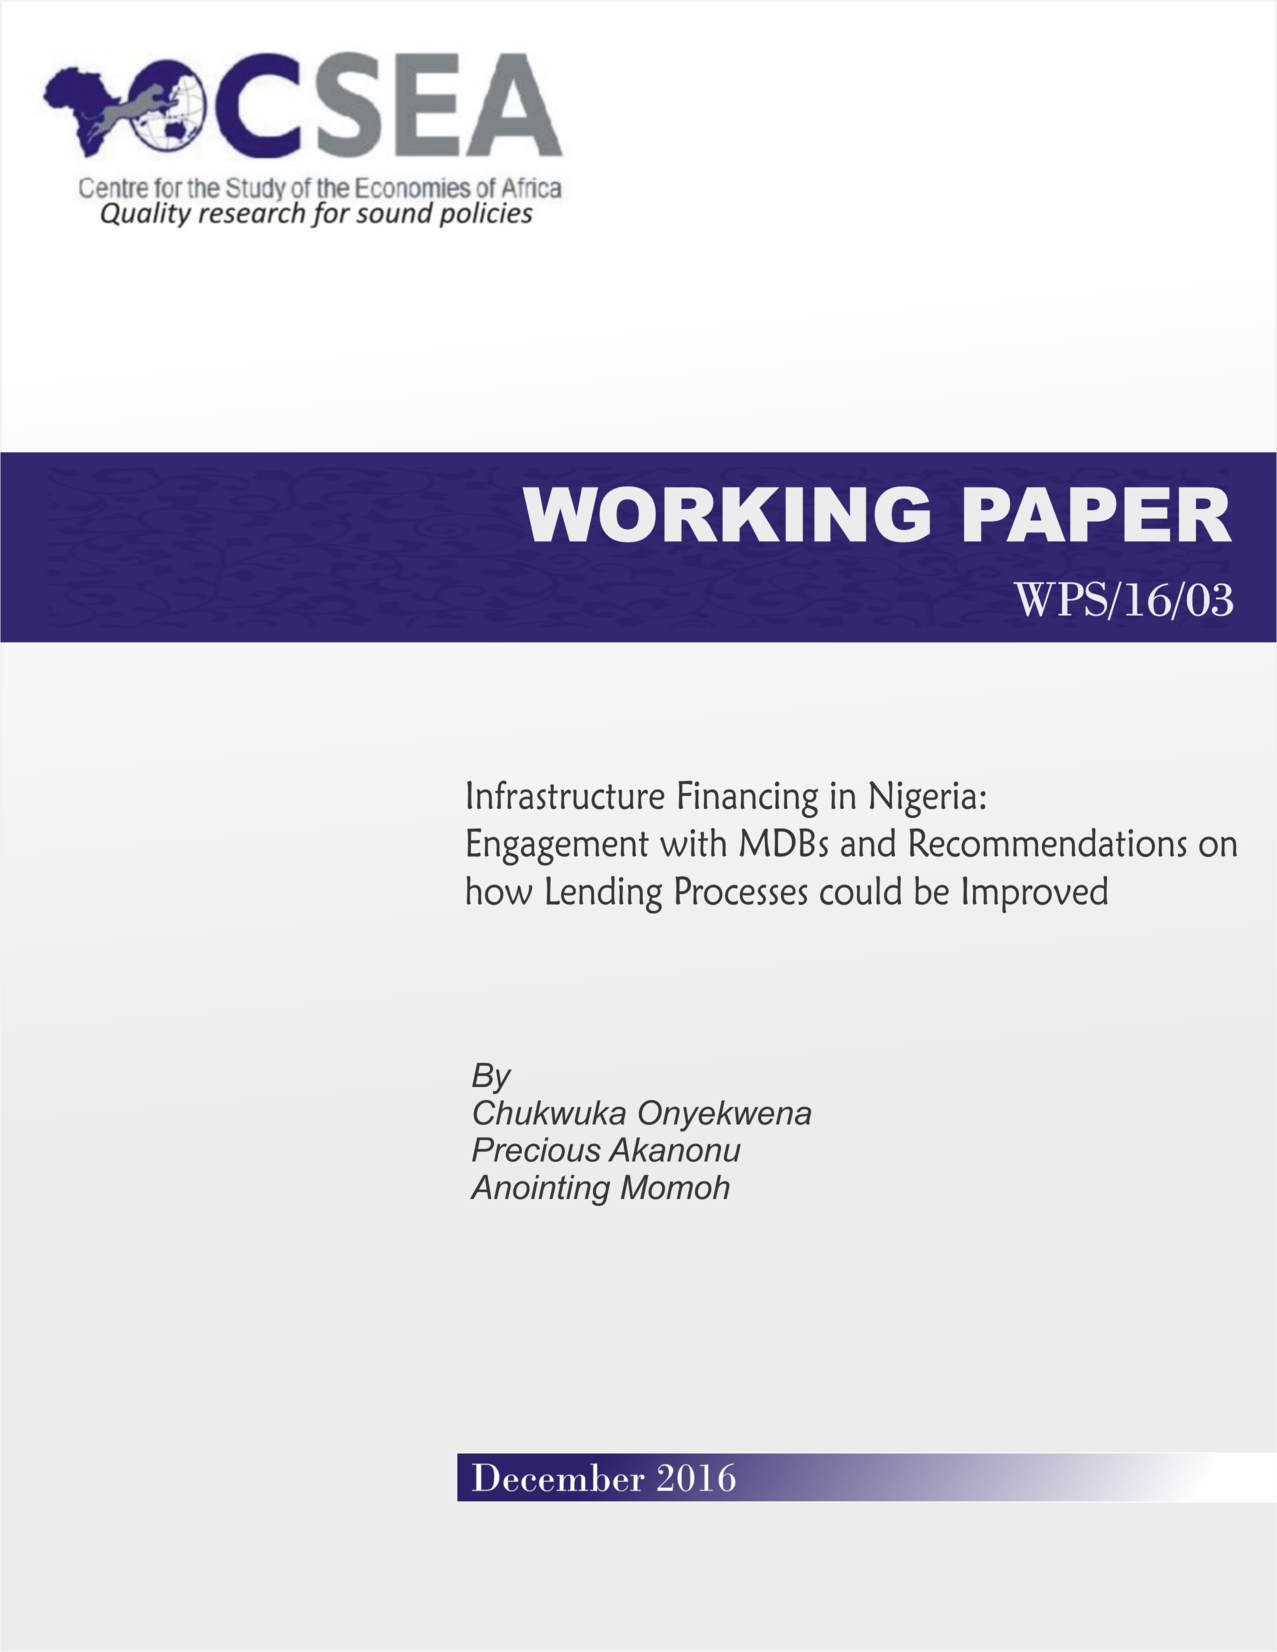 Infrastructure Financing In Nigeria: